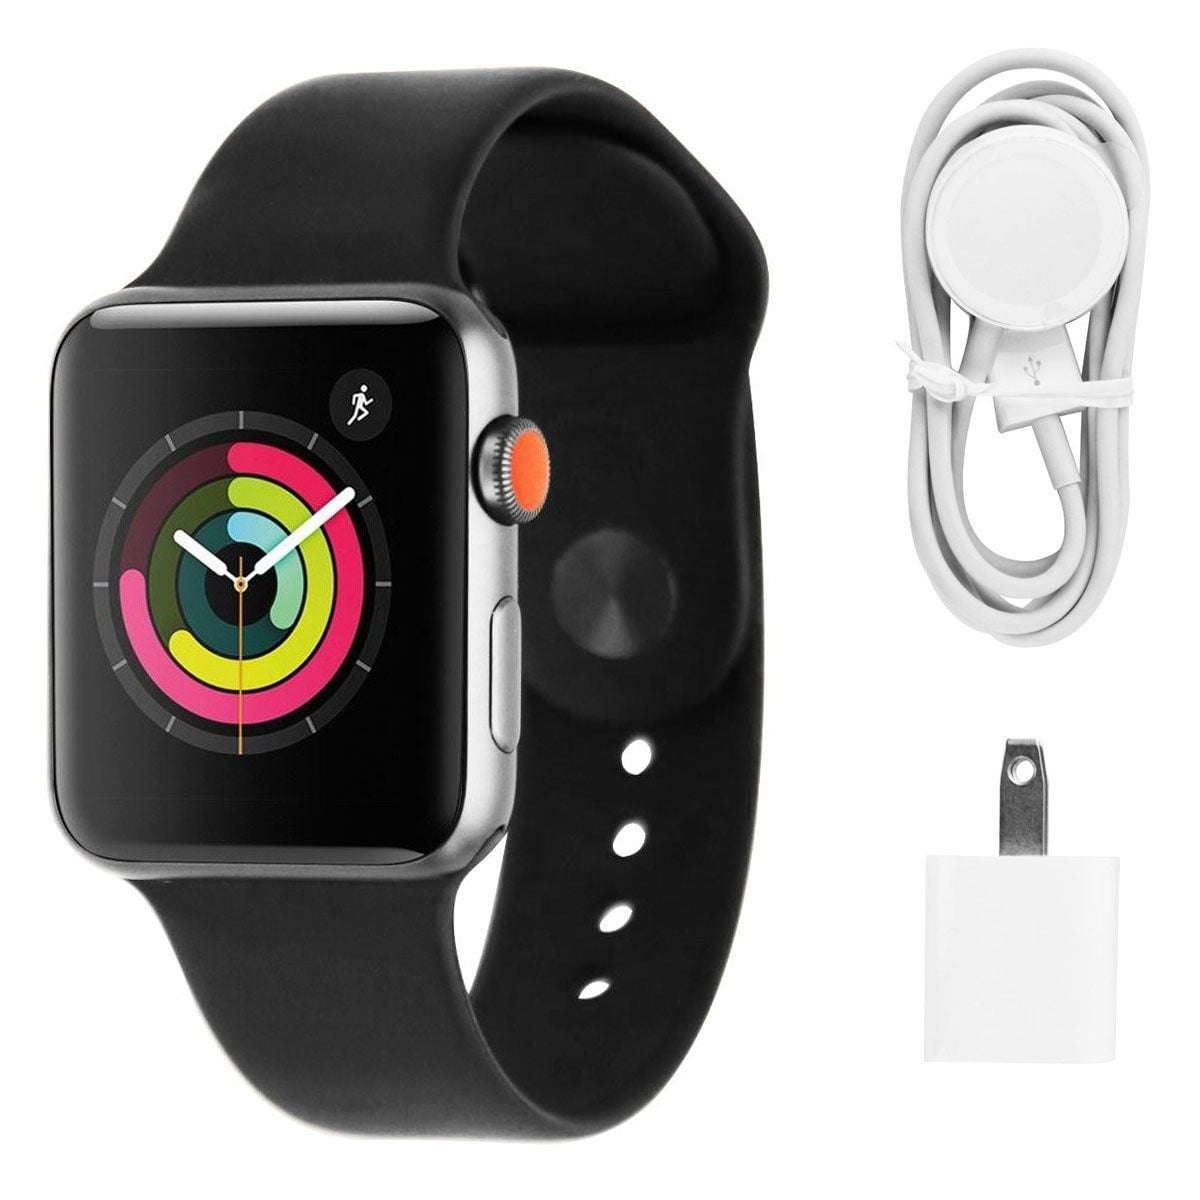 Watch часы 3 42mm. Apple Series 3 42mm. Часы Apple watch 3. Часы эпл вотч Series 3 42 mm. Apple watch Series 3 42 mm. Space Gray Aluminum Sport Band Black.